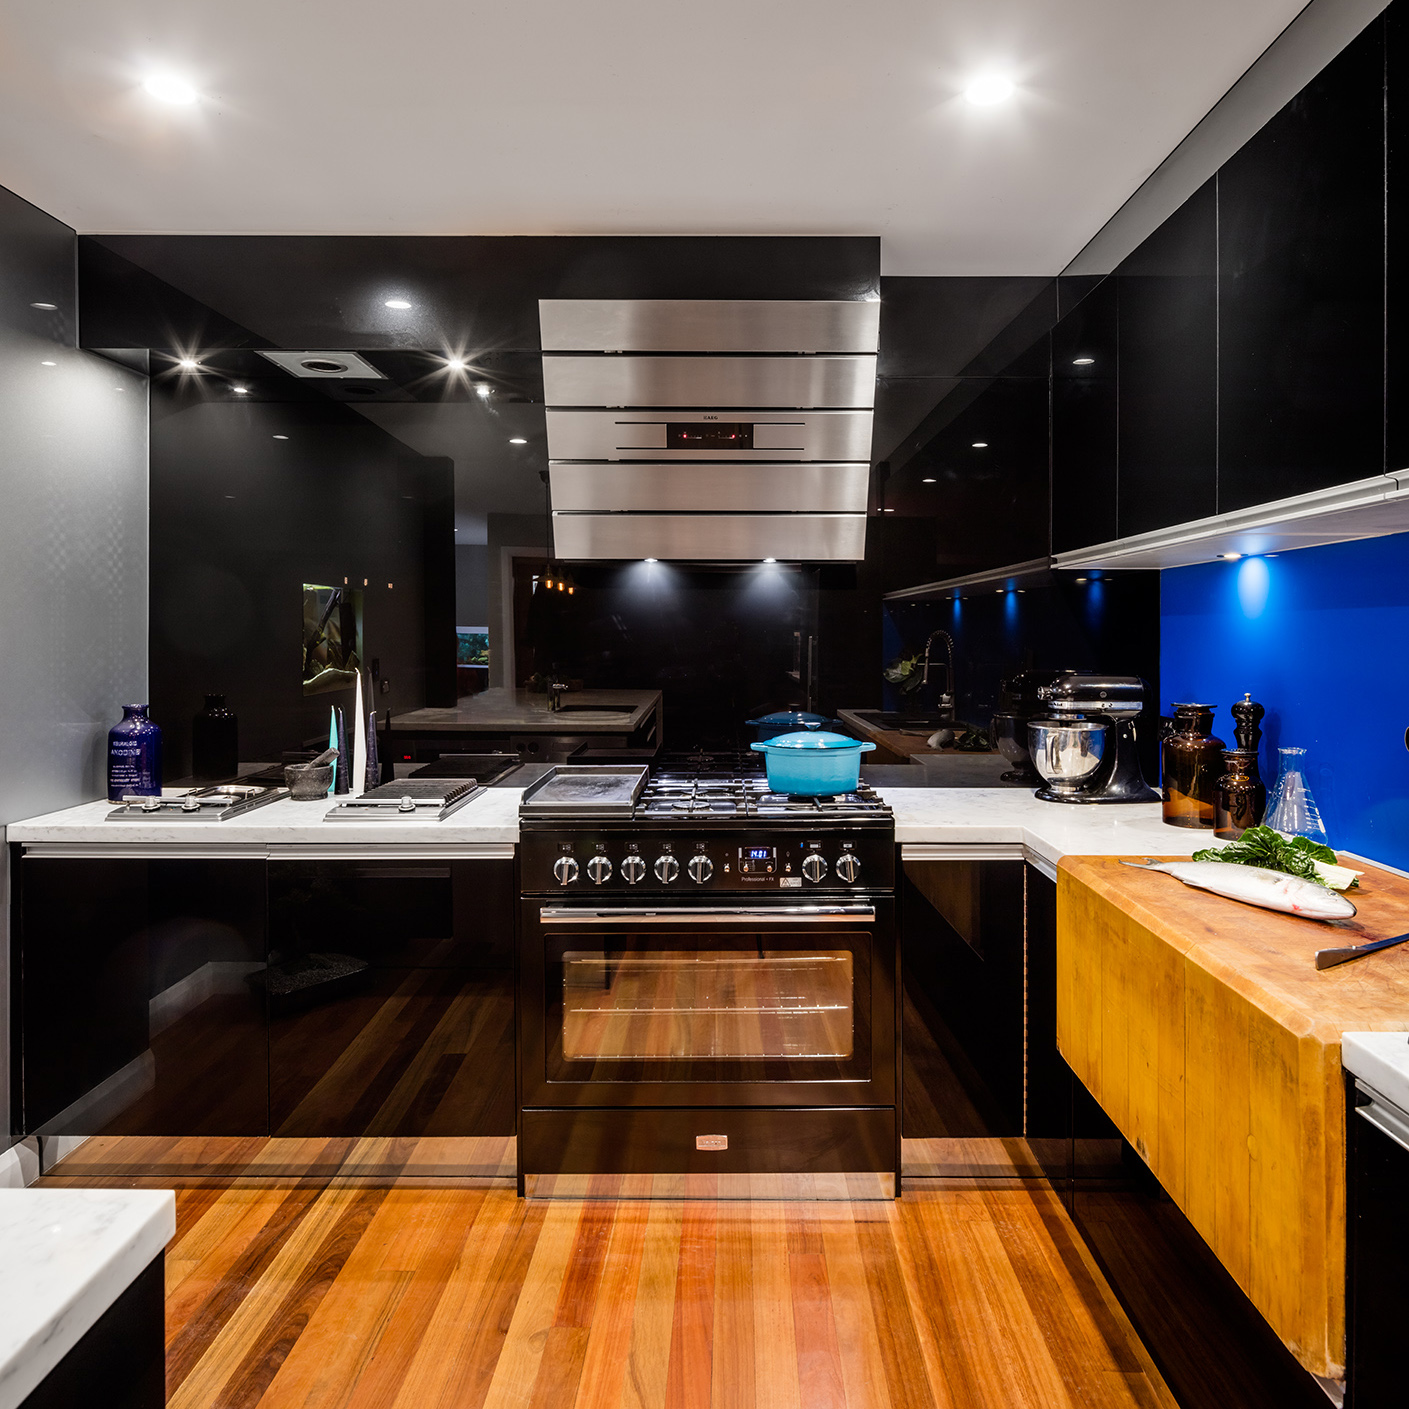 Interior-design-kitchen-photography-freedom-6.jpg